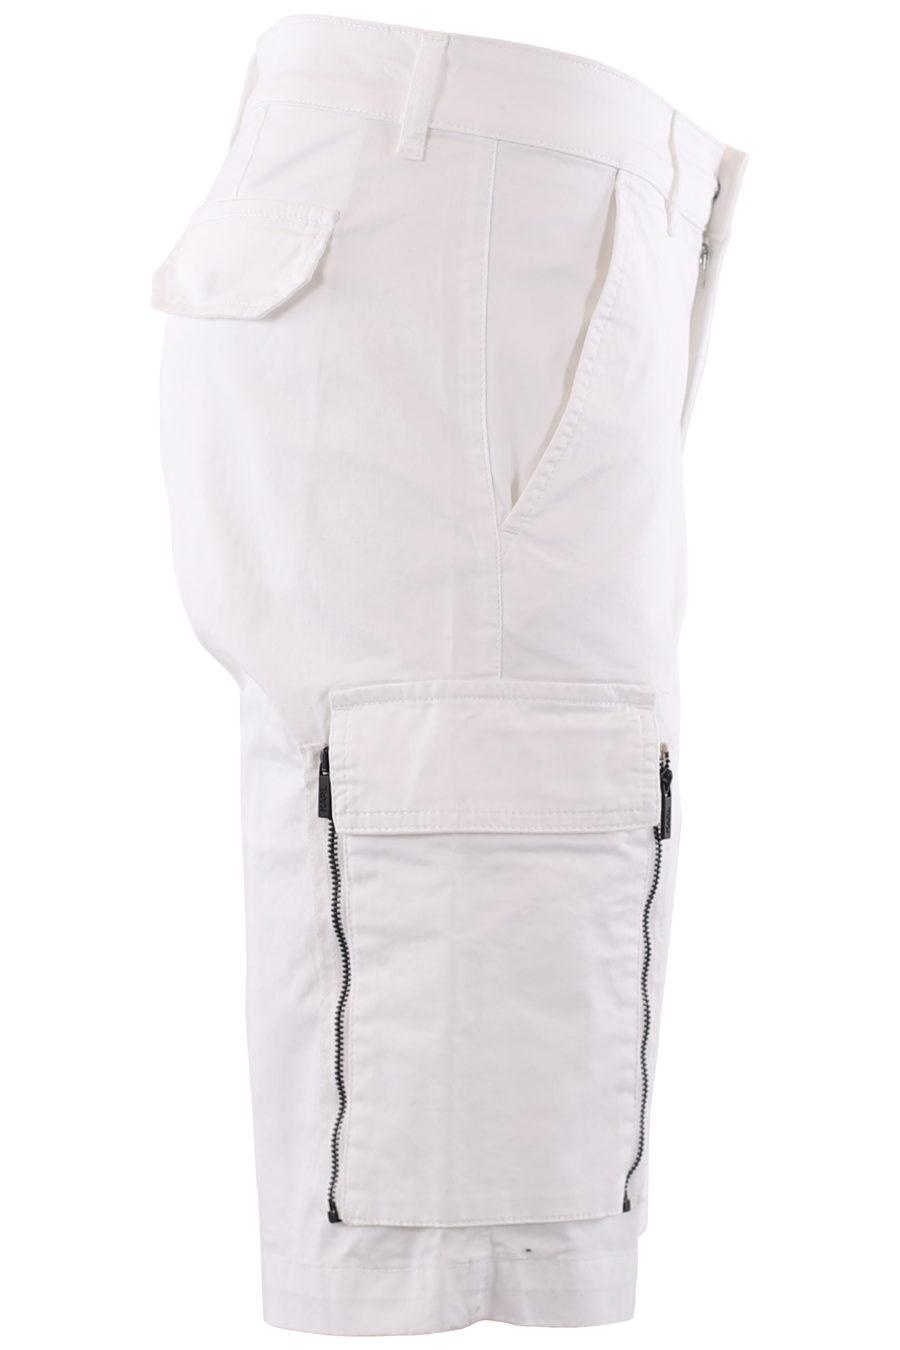 Pantalón corto blanco cargo - IMG 6636